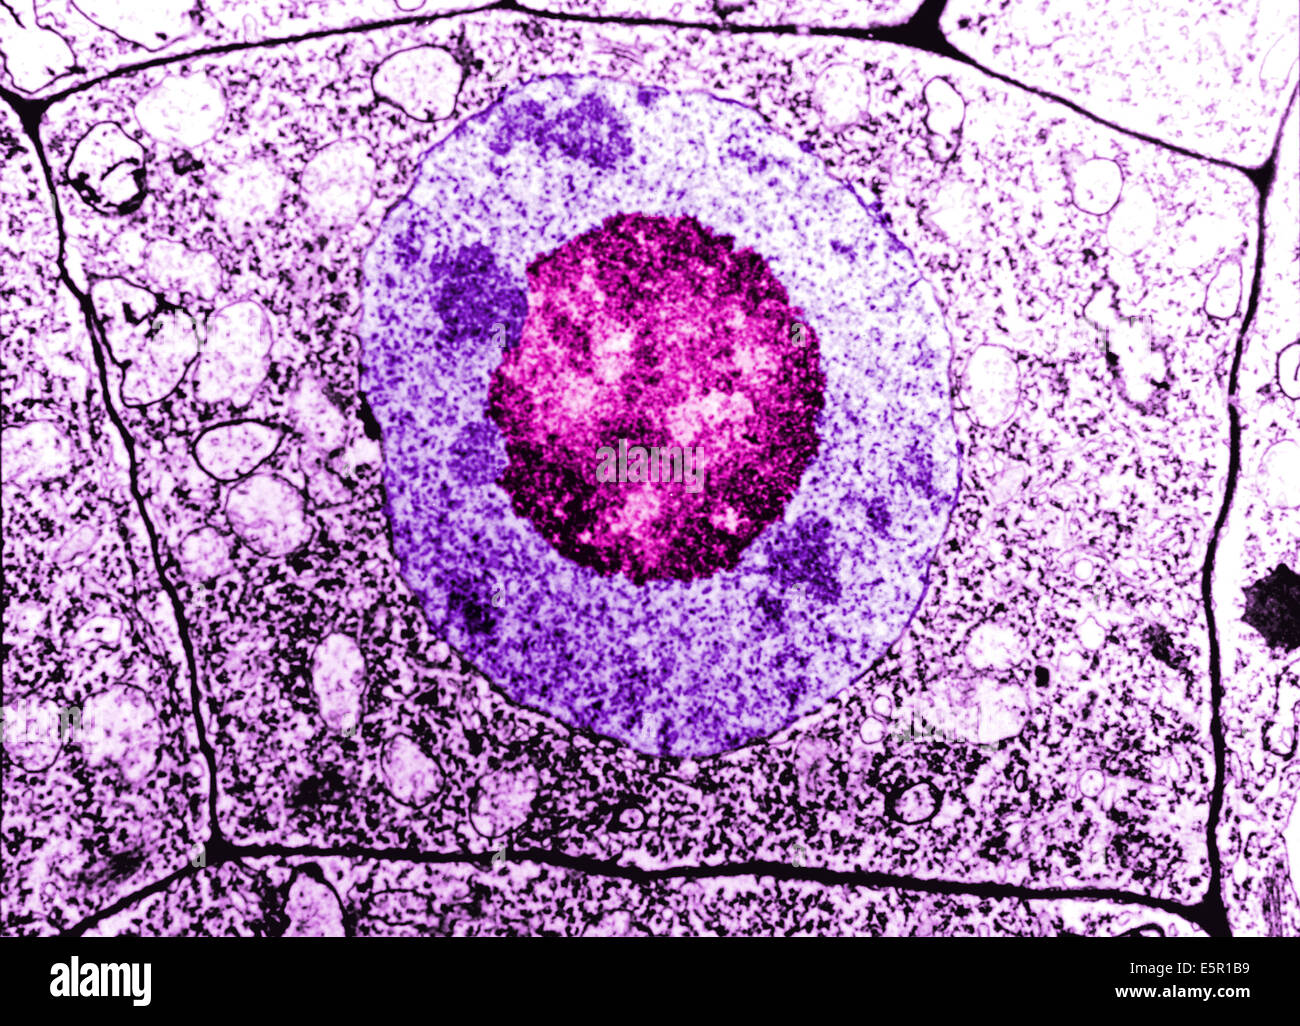 Microscopia elettronica di una normale cellula umana, la membrana cellulare, nucleo e nucleolus sono distinguibili. Foto Stock